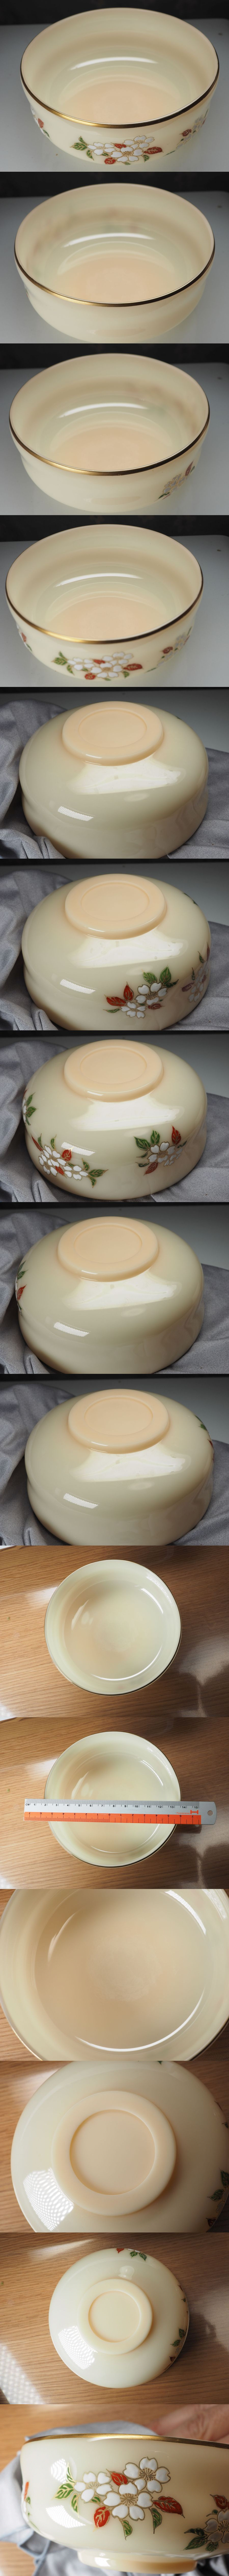 【割引中】京セラ『玉磁』 稲盛 宝玉で作られた茶碗 人造サファイア・ルビーと同等の物質 宋